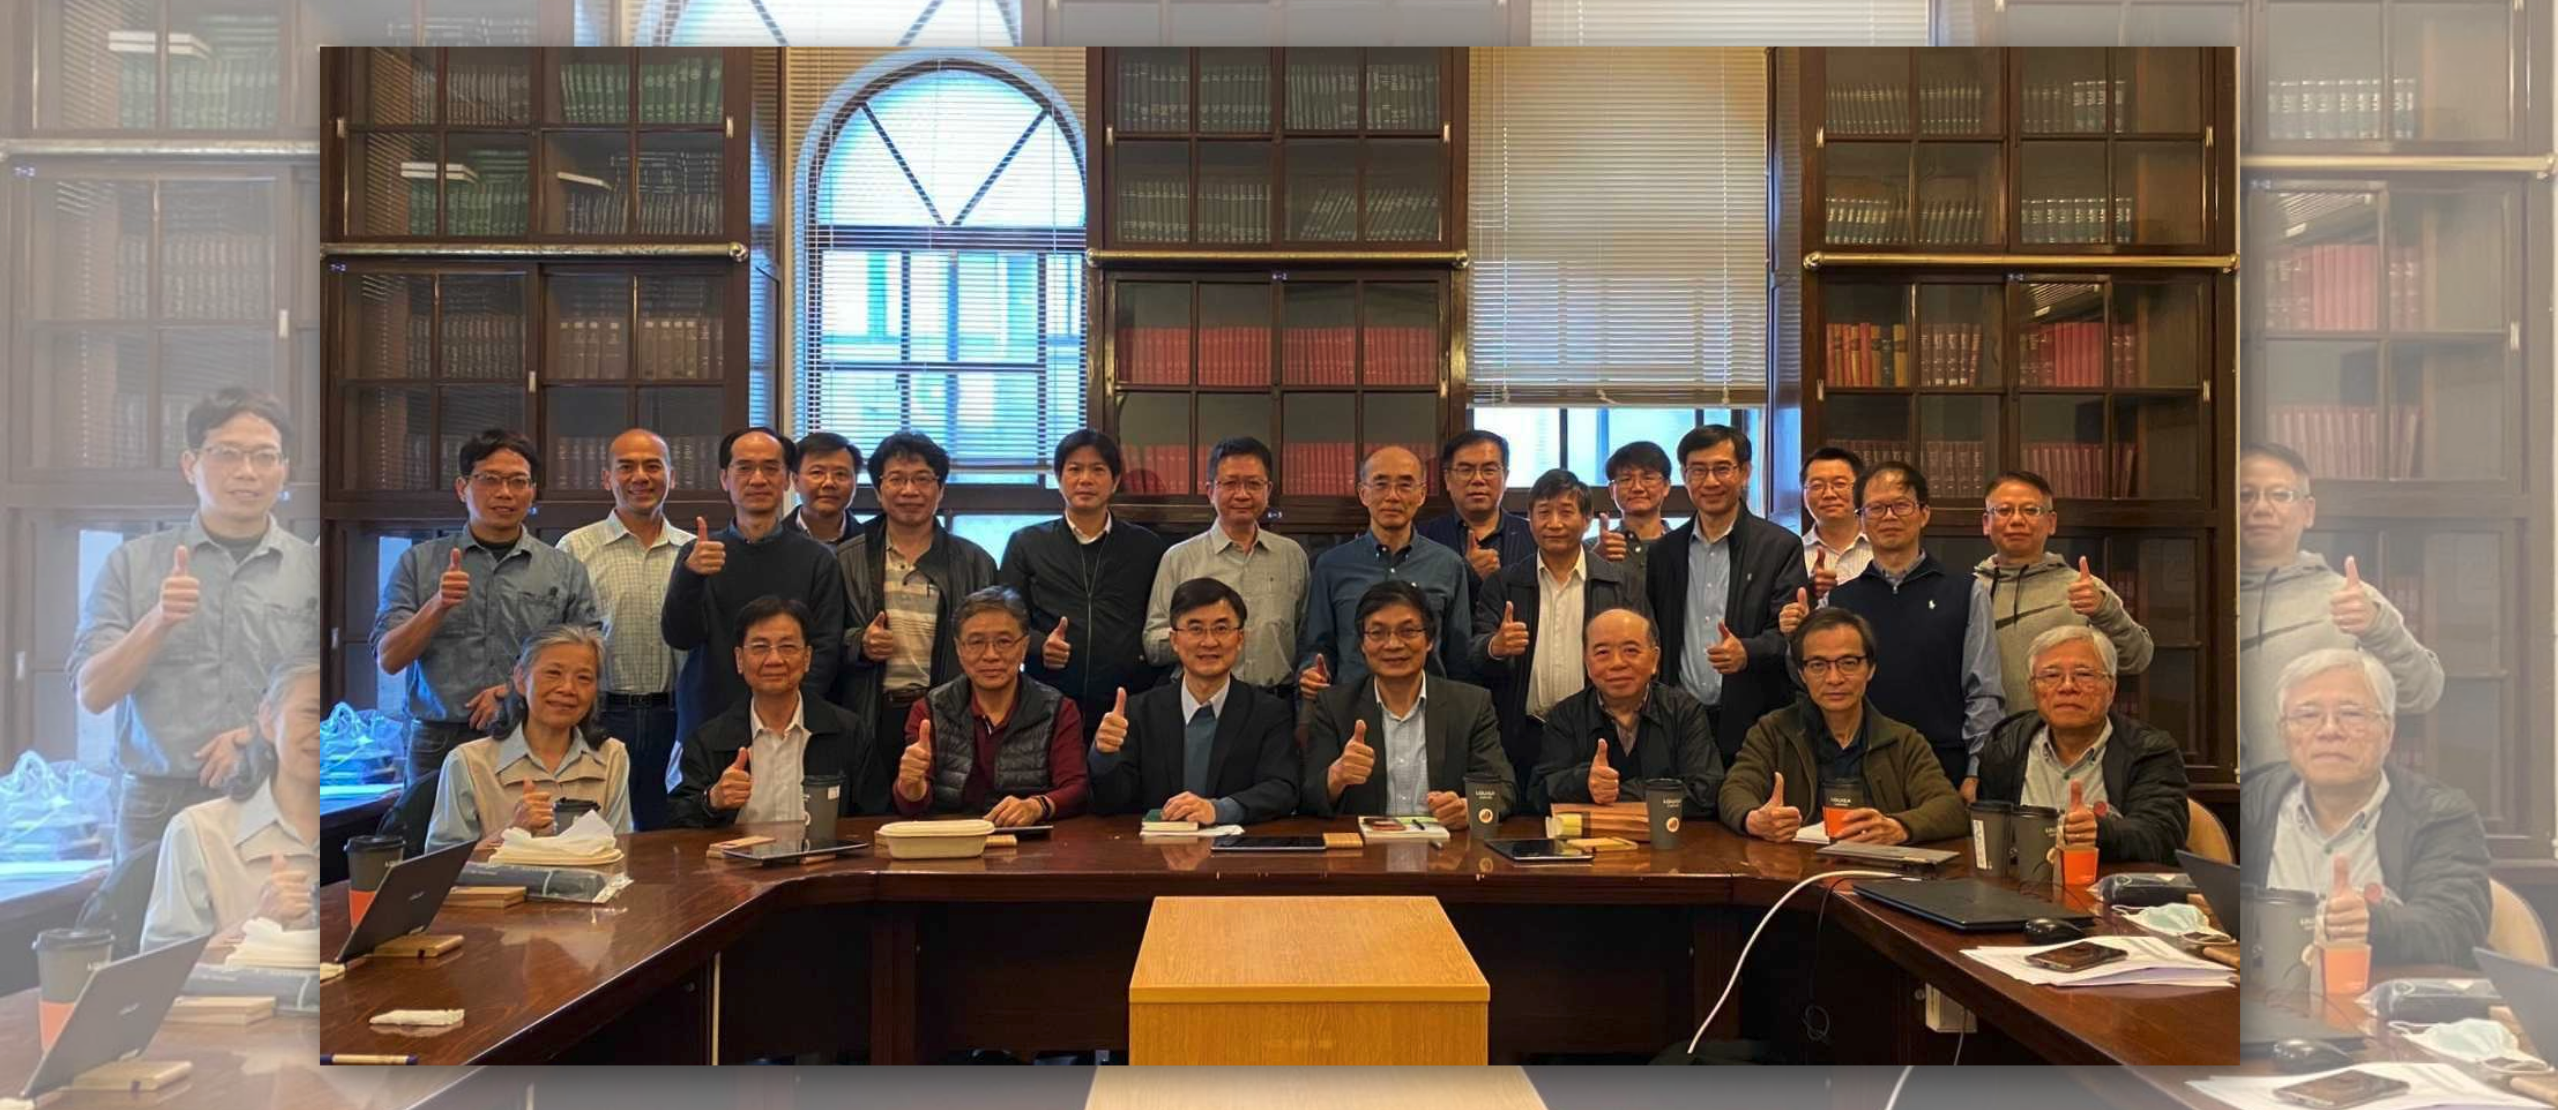 恭喜大氣系 林沛練教授 當選中華民國氣象學會第57屆理事長